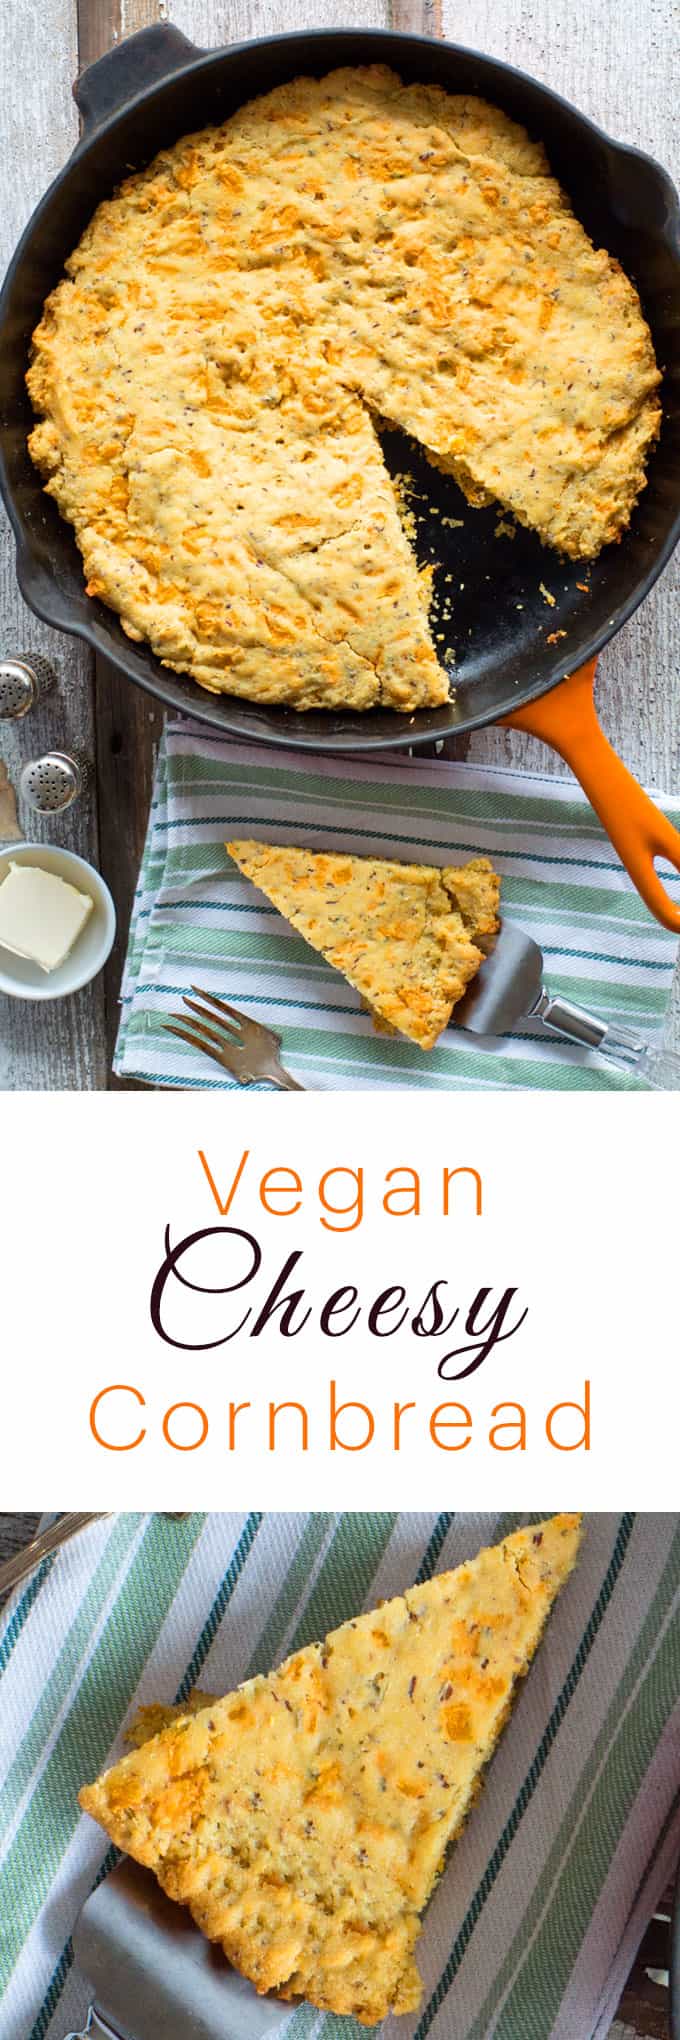 Cheesy Cornbread Recipe | Vegan Holiday Recipe